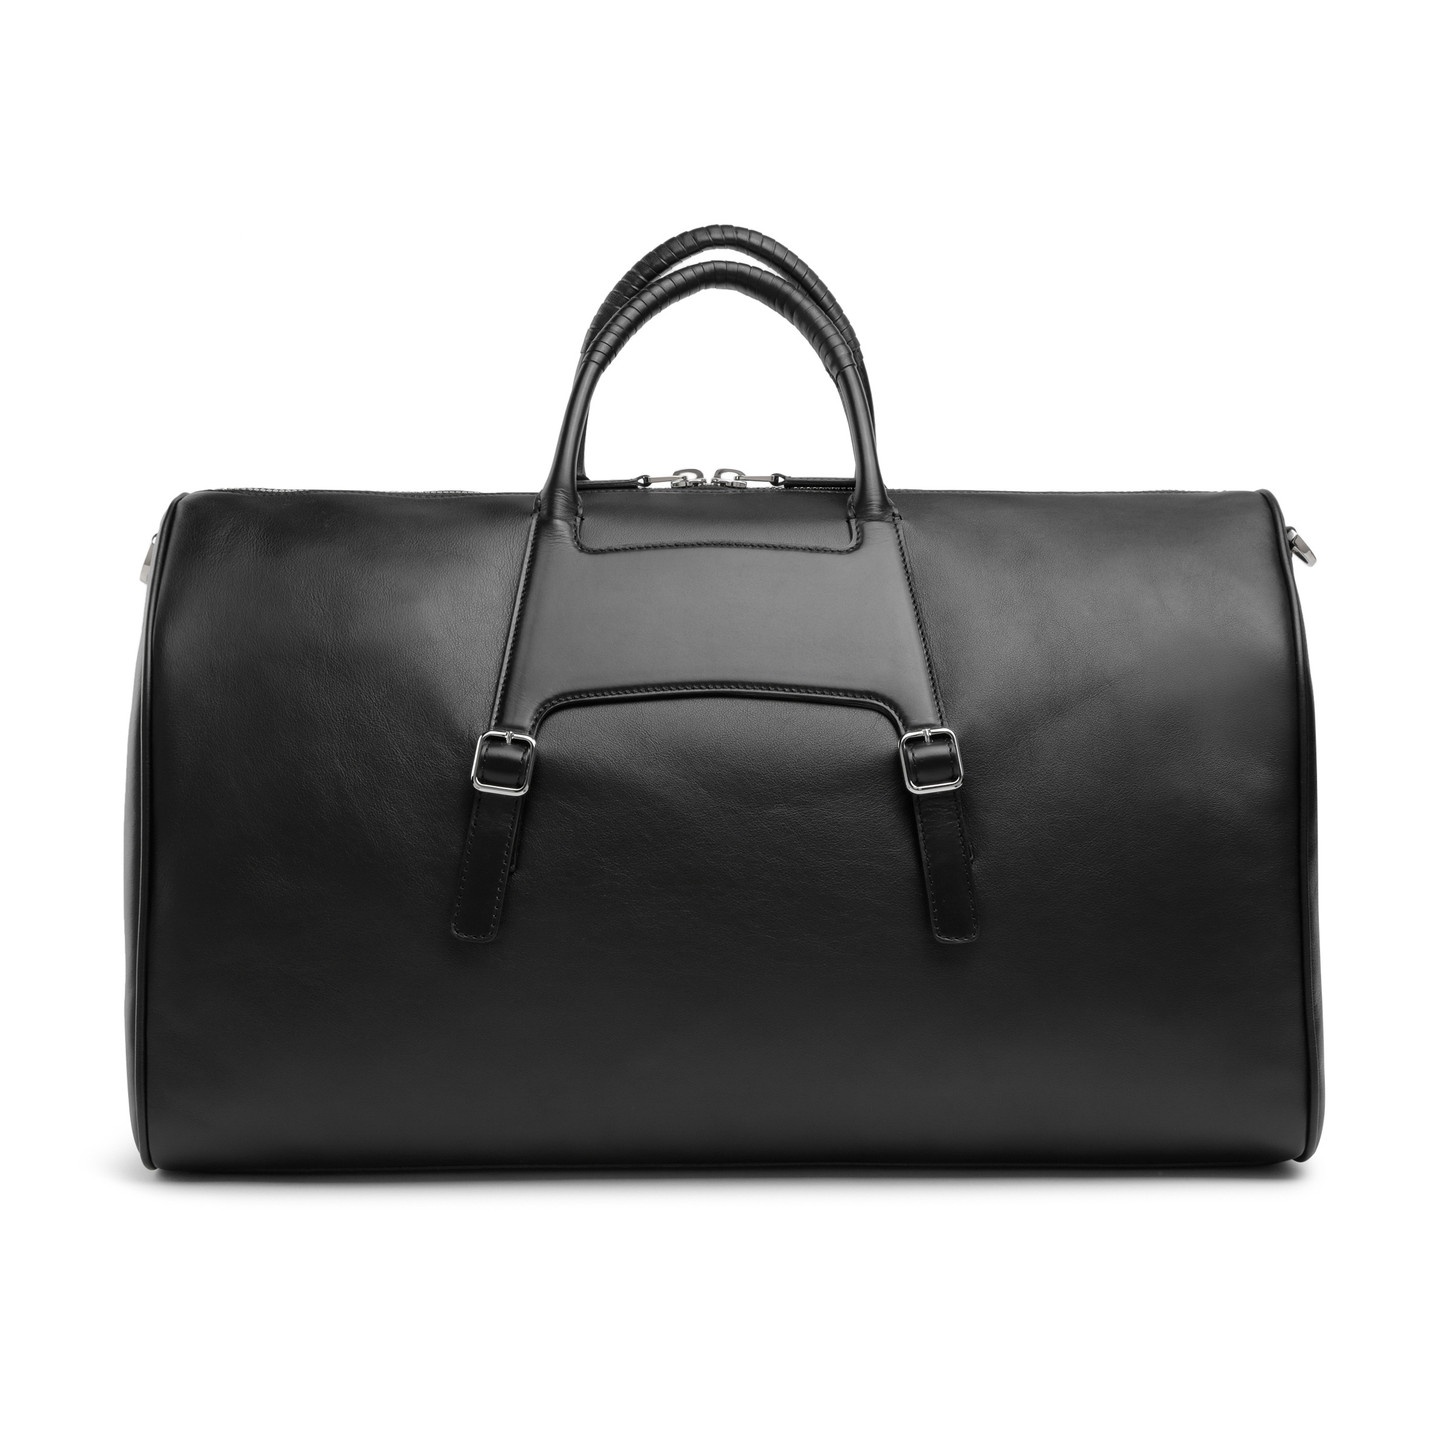 Black leather weekend bag - 3